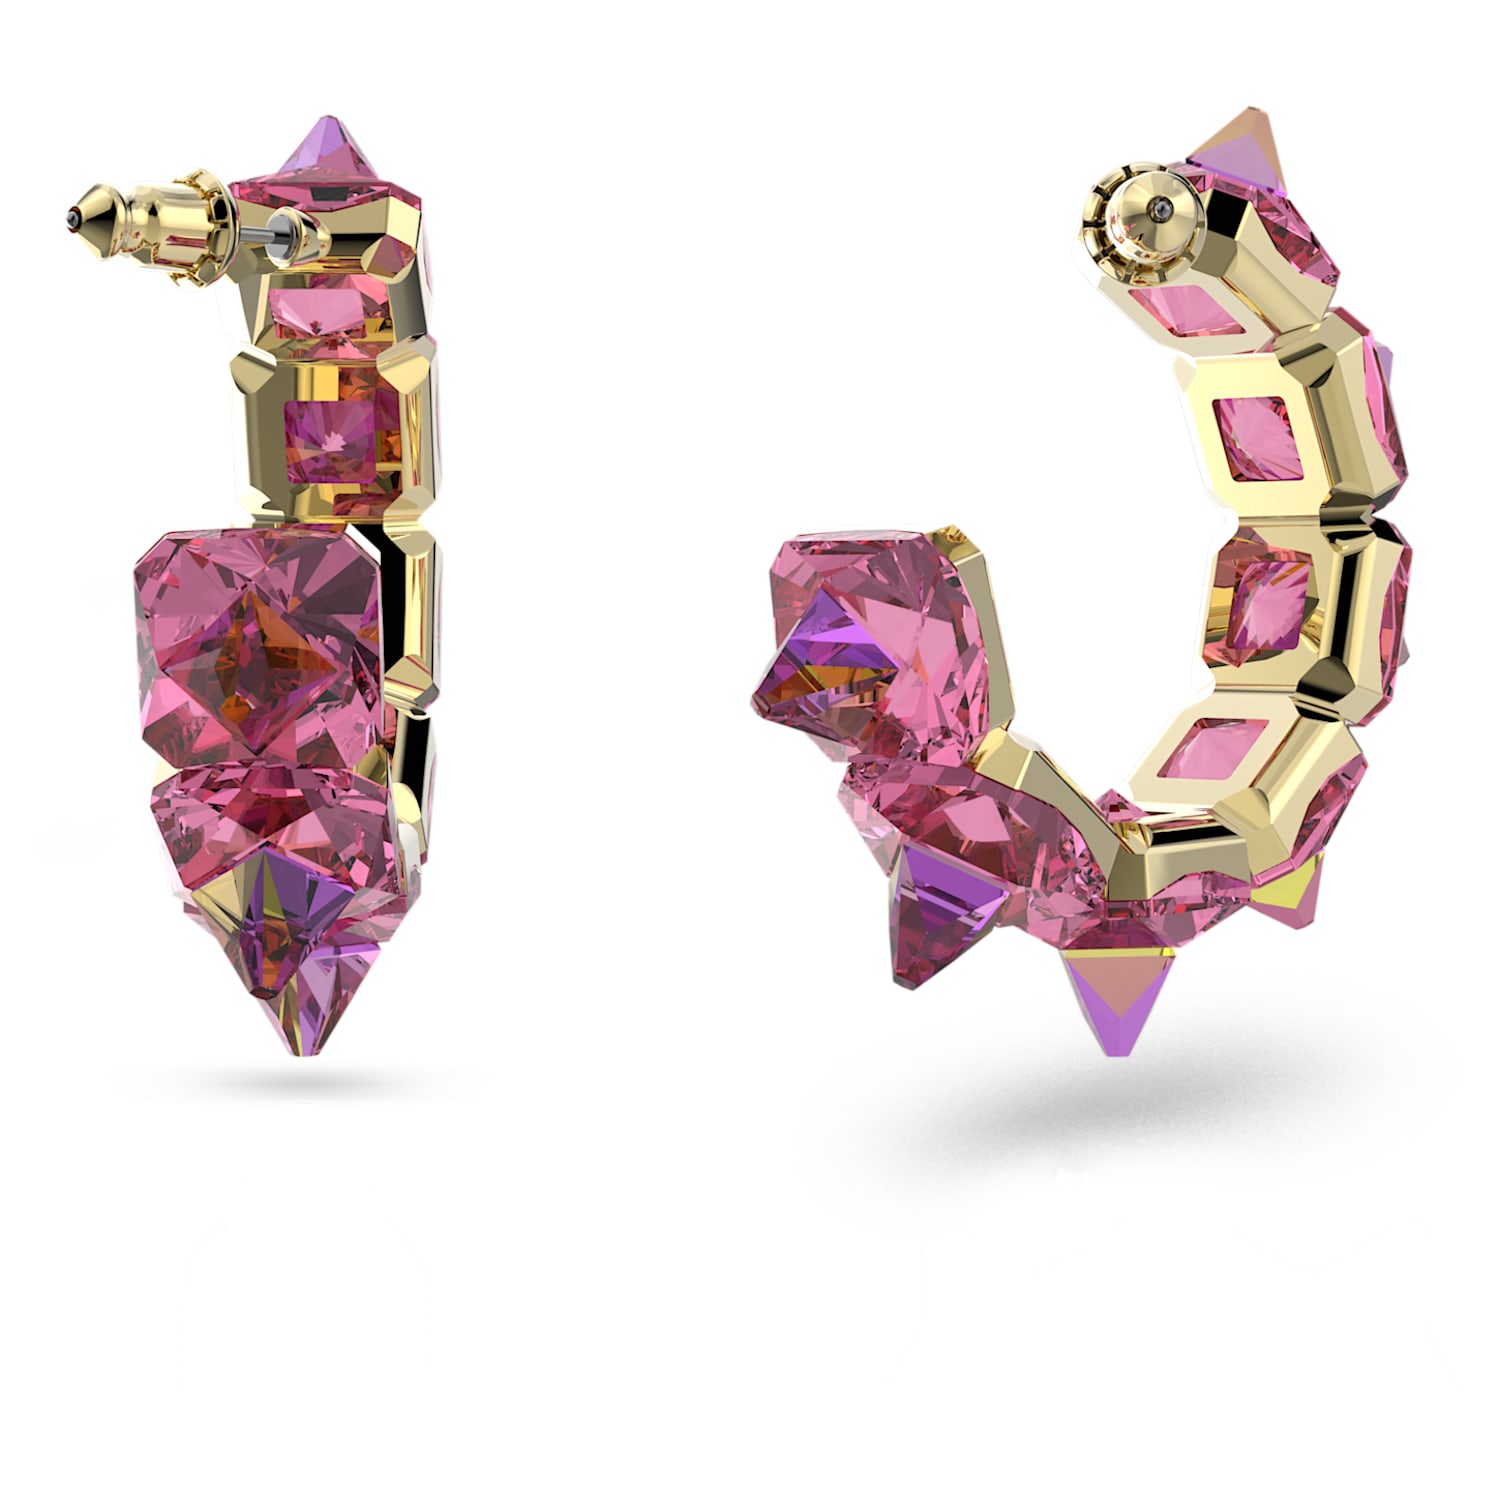 triangle earrings geometric earrings Pink purple earrings gifts for her,